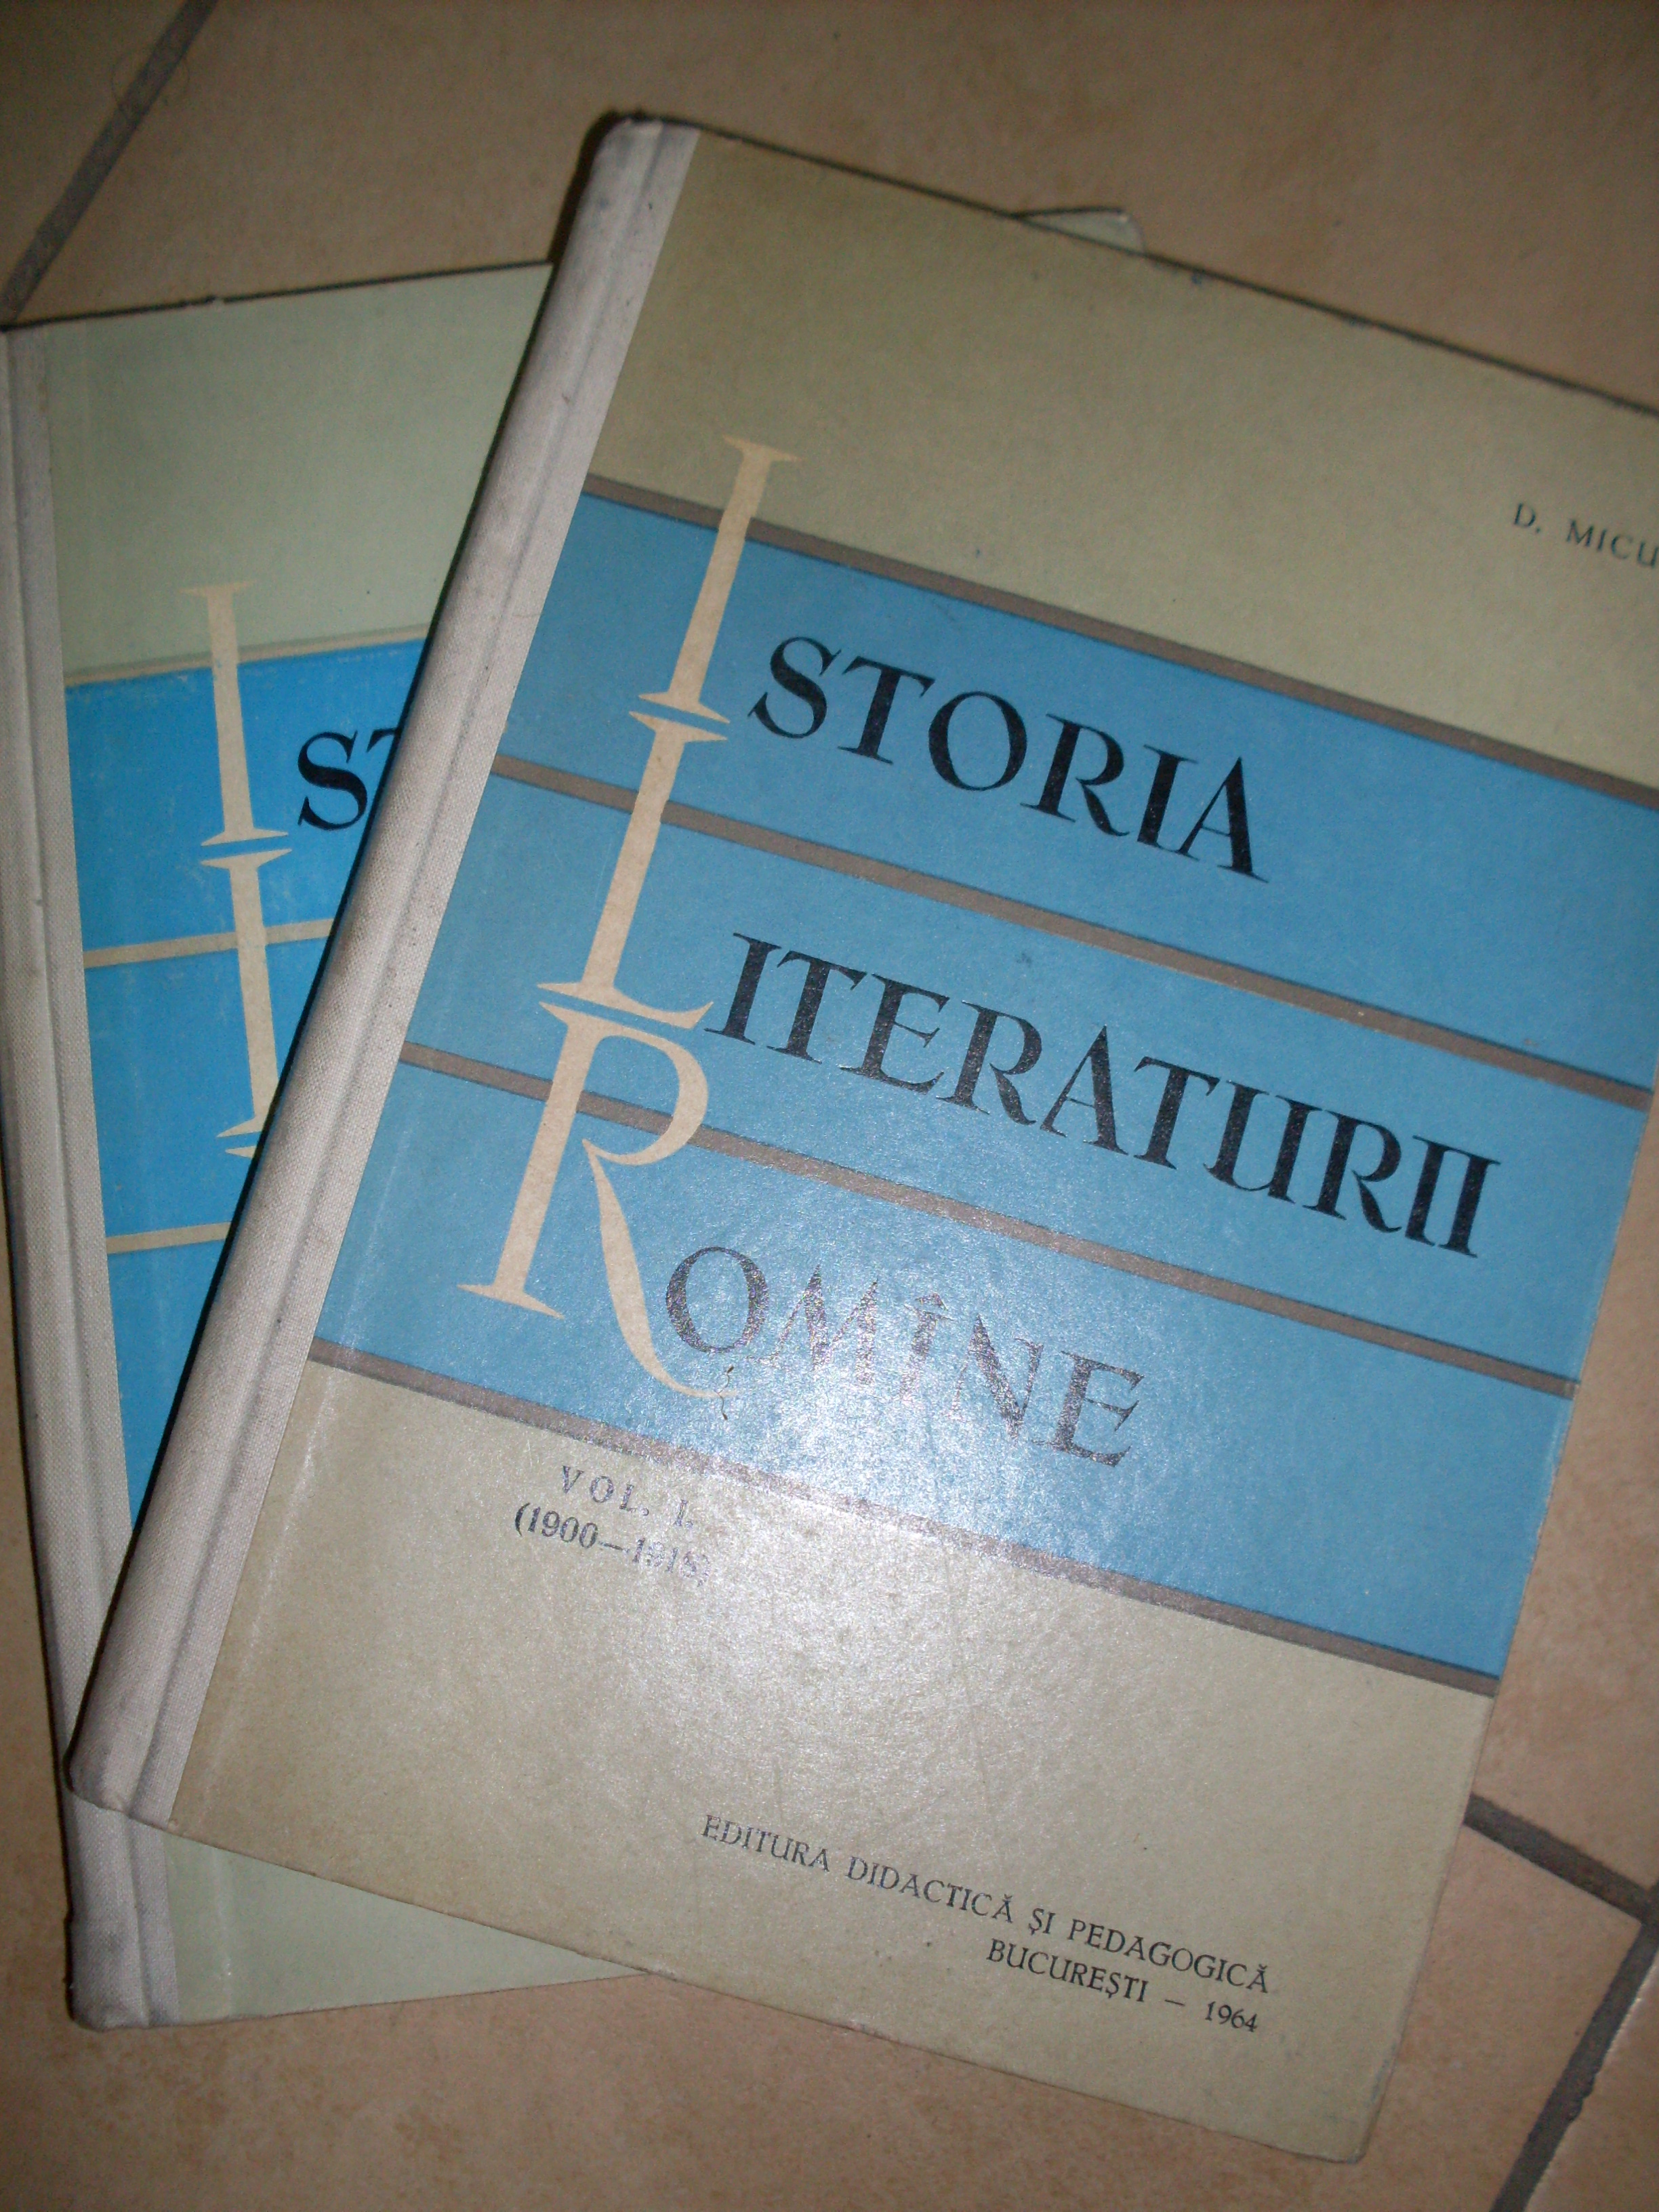 istoria literaturii romane vol 1-2                                                                   d. micu                                                                                             